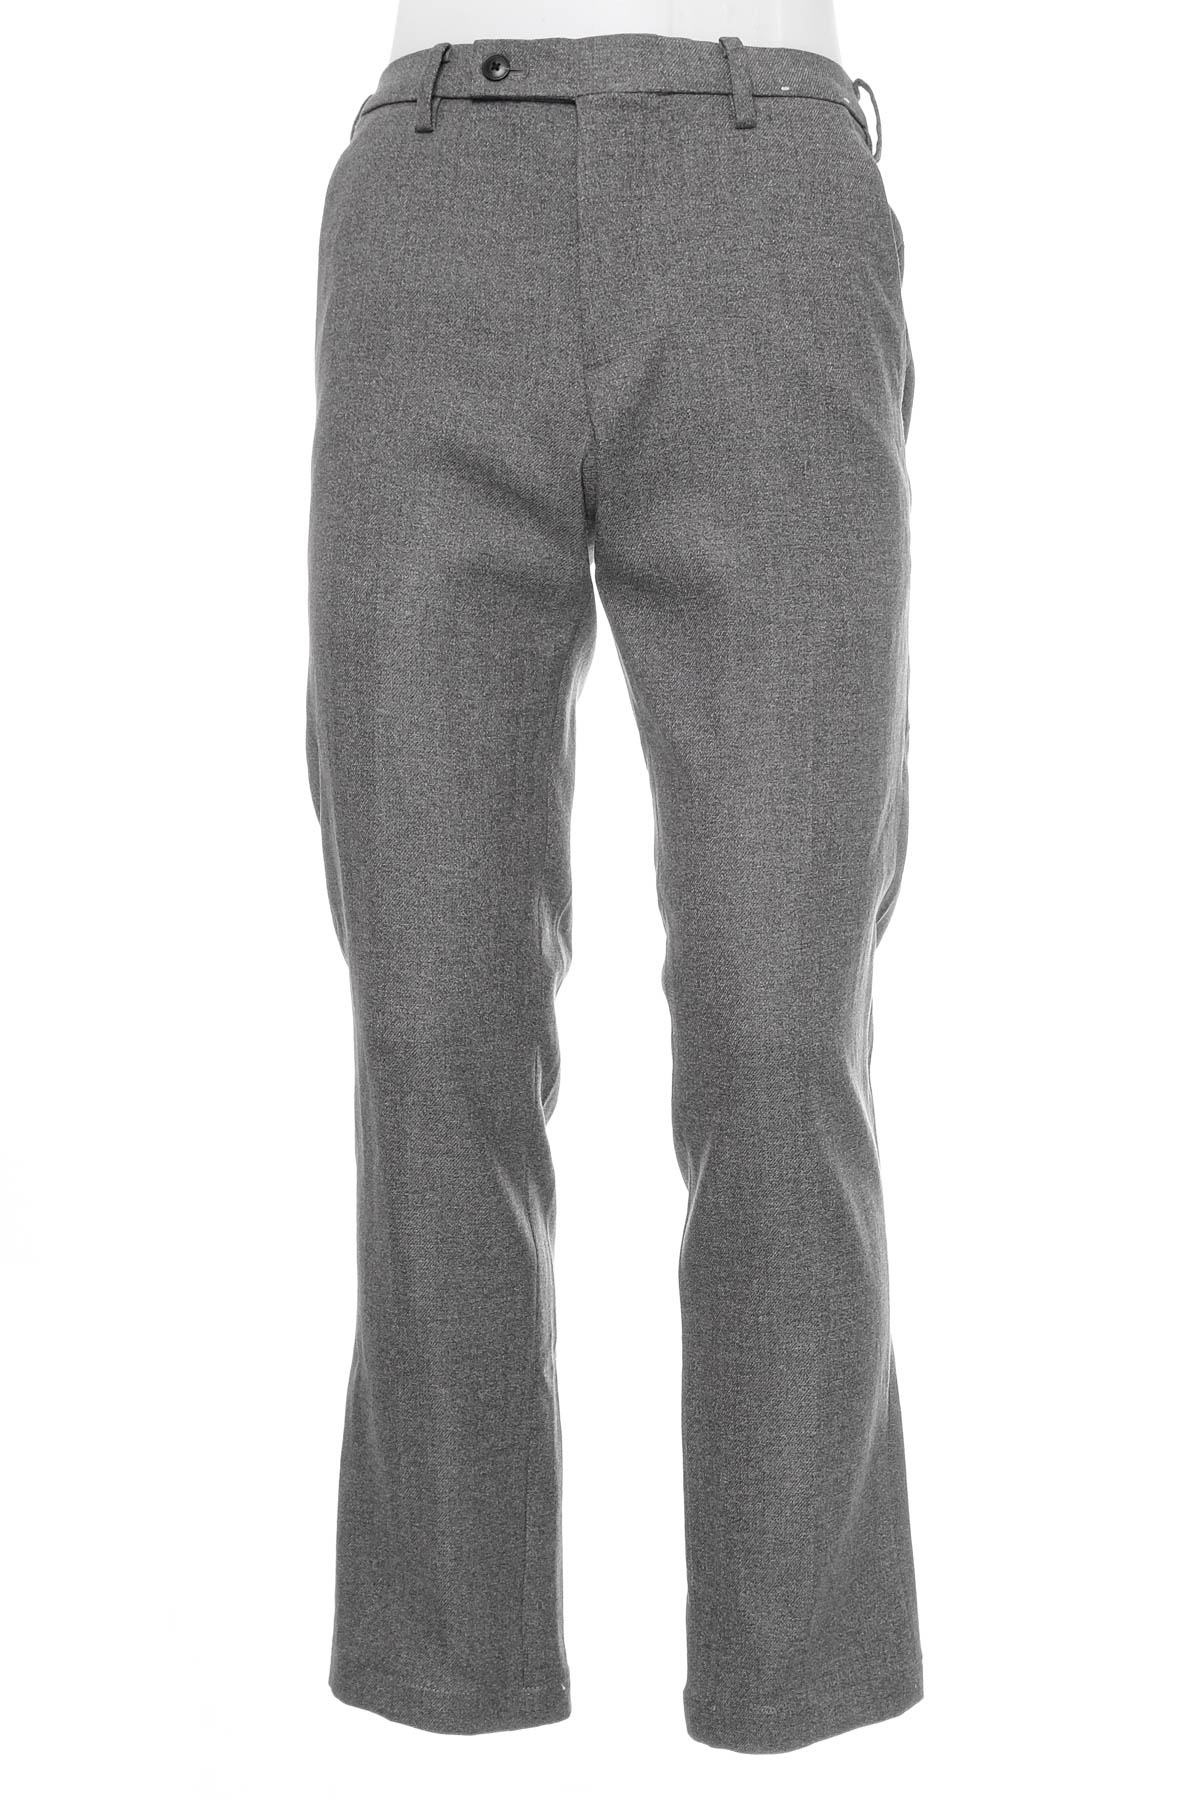 Men's trousers - UNIQLO - 0